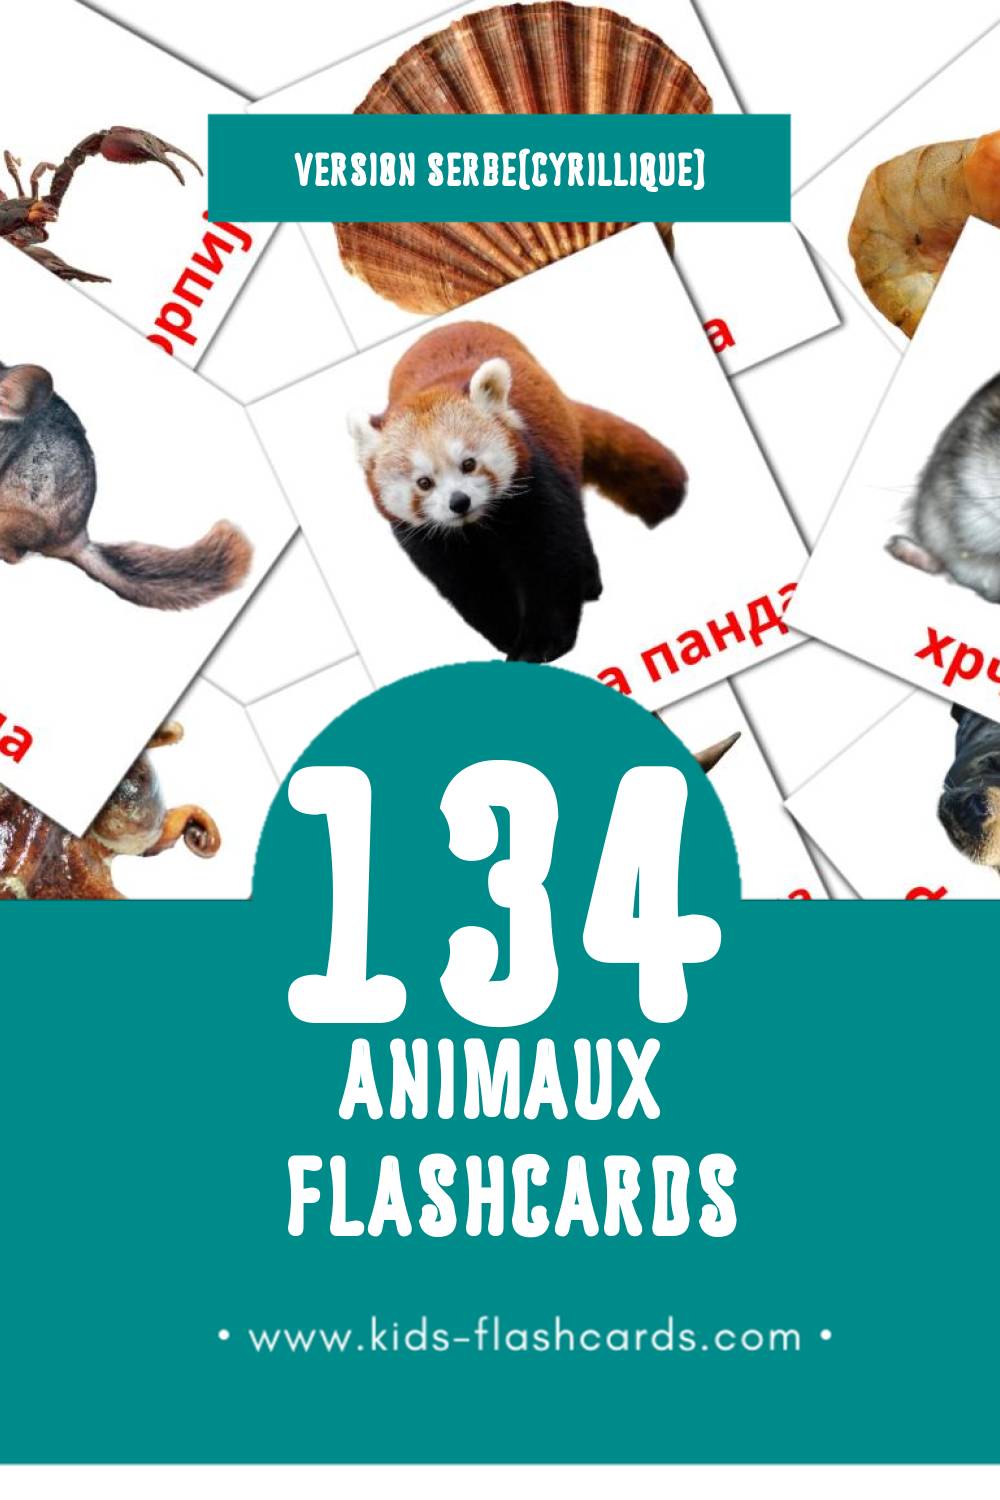 Flashcards Visual Животиње pour les tout-petits (110 cartes en Serbe(cyrillique))